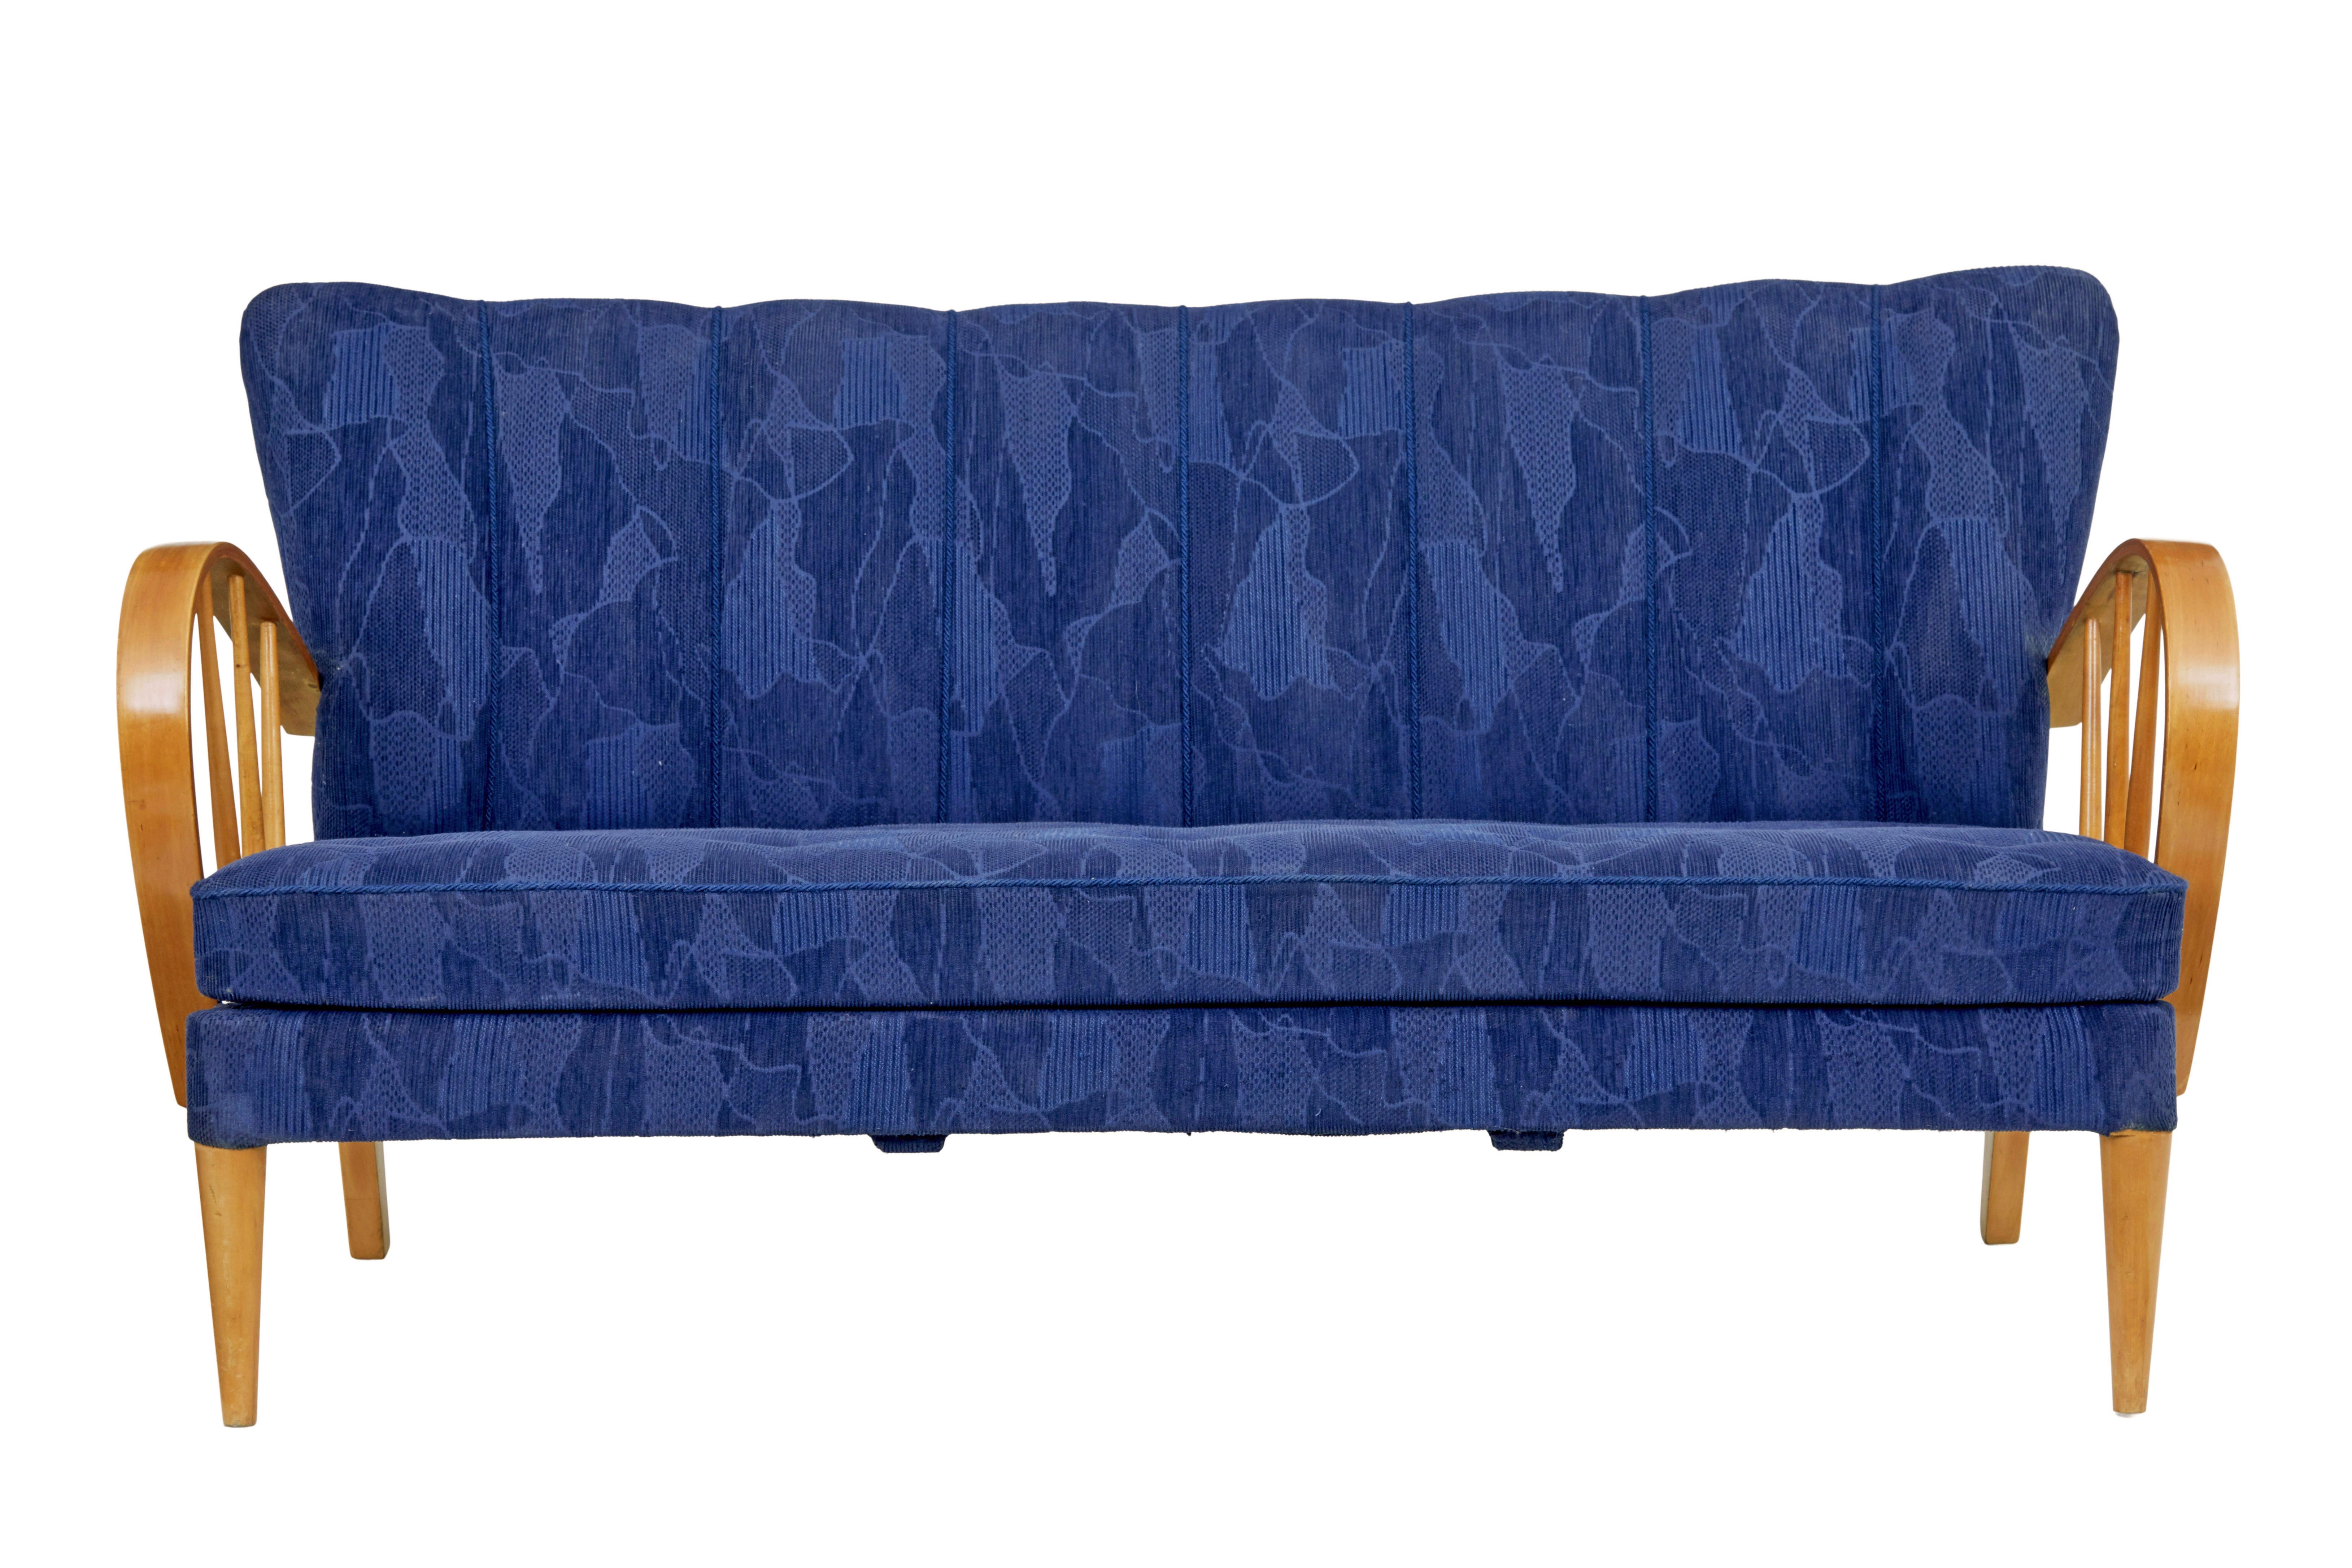 Mitte des 20. Jahrhunderts skandinavisches Ulmen-Sofa mit Rahmen um 1960.

Stilvolles Stück schwedischen Designs aus den 1960er Jahren.  Muschelförmige Rückenlehne mit zusätzlicher Paspelierung, Knopfleiste am abnehmbaren Sitzkissen.

Show Frame